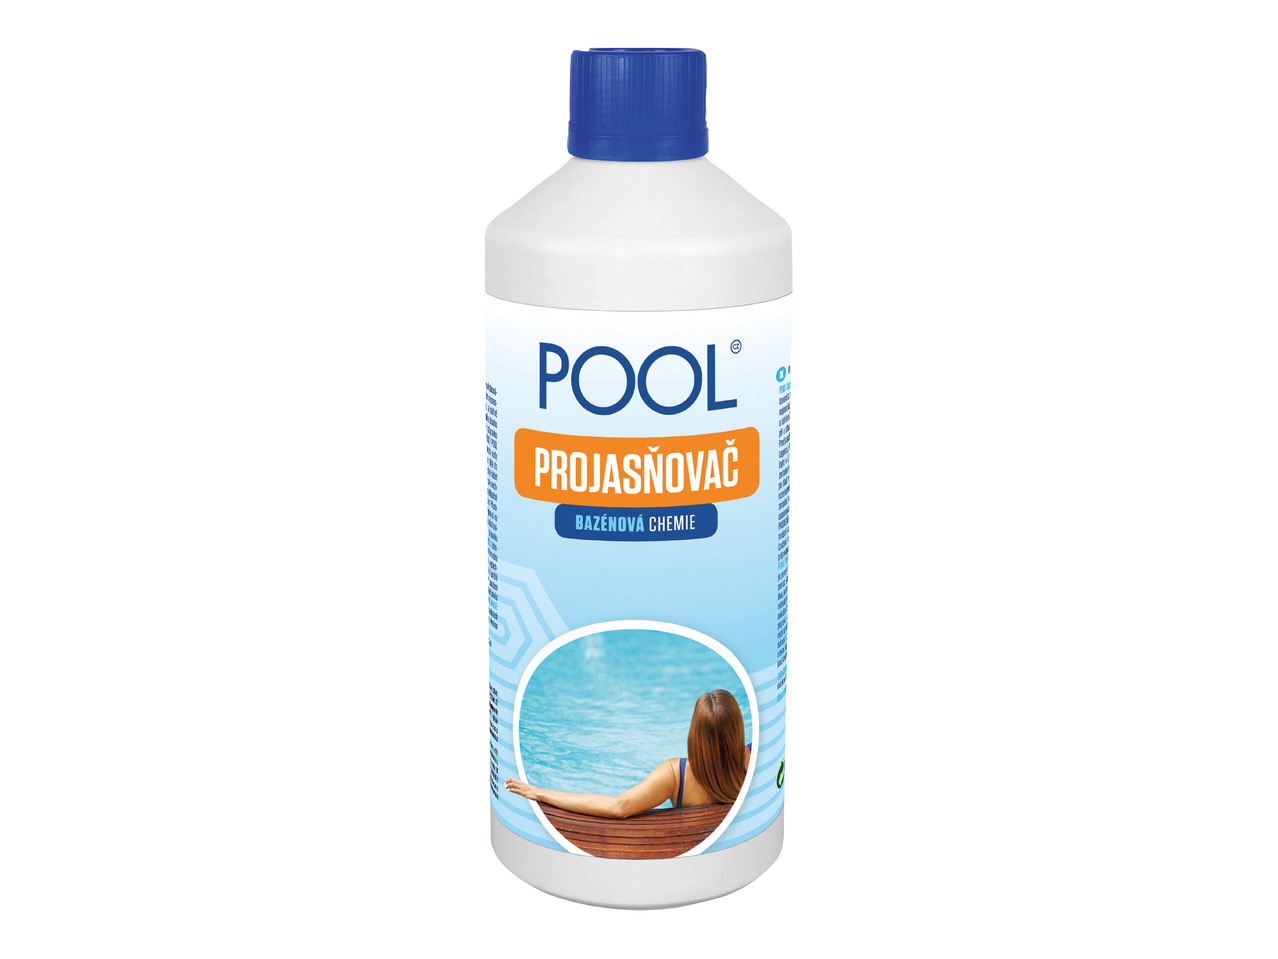 „Pool" Projasnovac 0,5 l